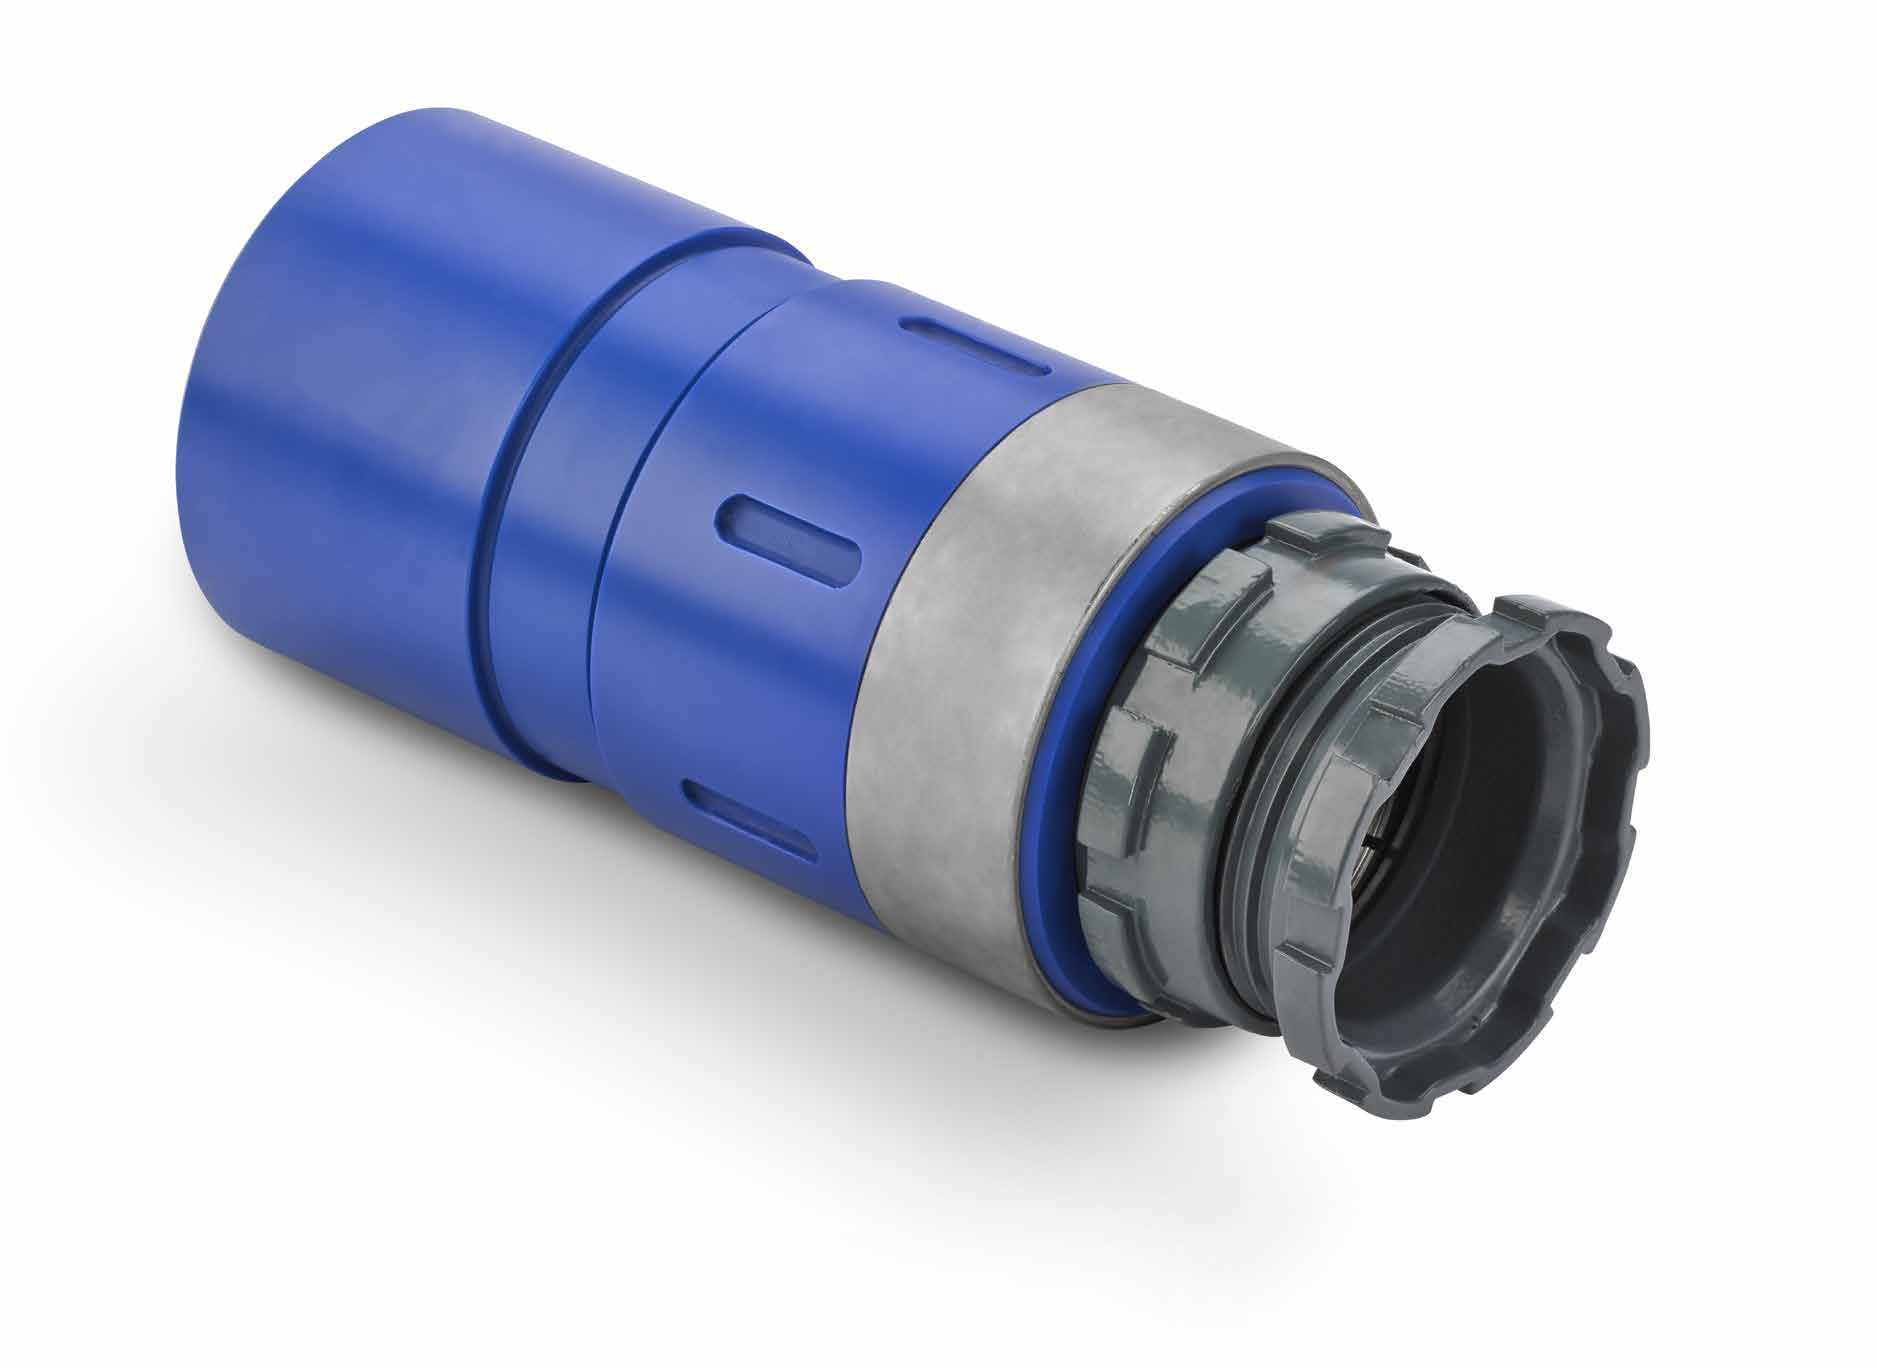 Guss Reparaturkupplung mit EPDM Lippendichtung System 3S, Trinkwasserqualität Muffenkörper aus PE 100-RC Edelstahlschrauben zum sicheren Vorspannen (Fixierung des Grip-Rings) Muffenkörper mit